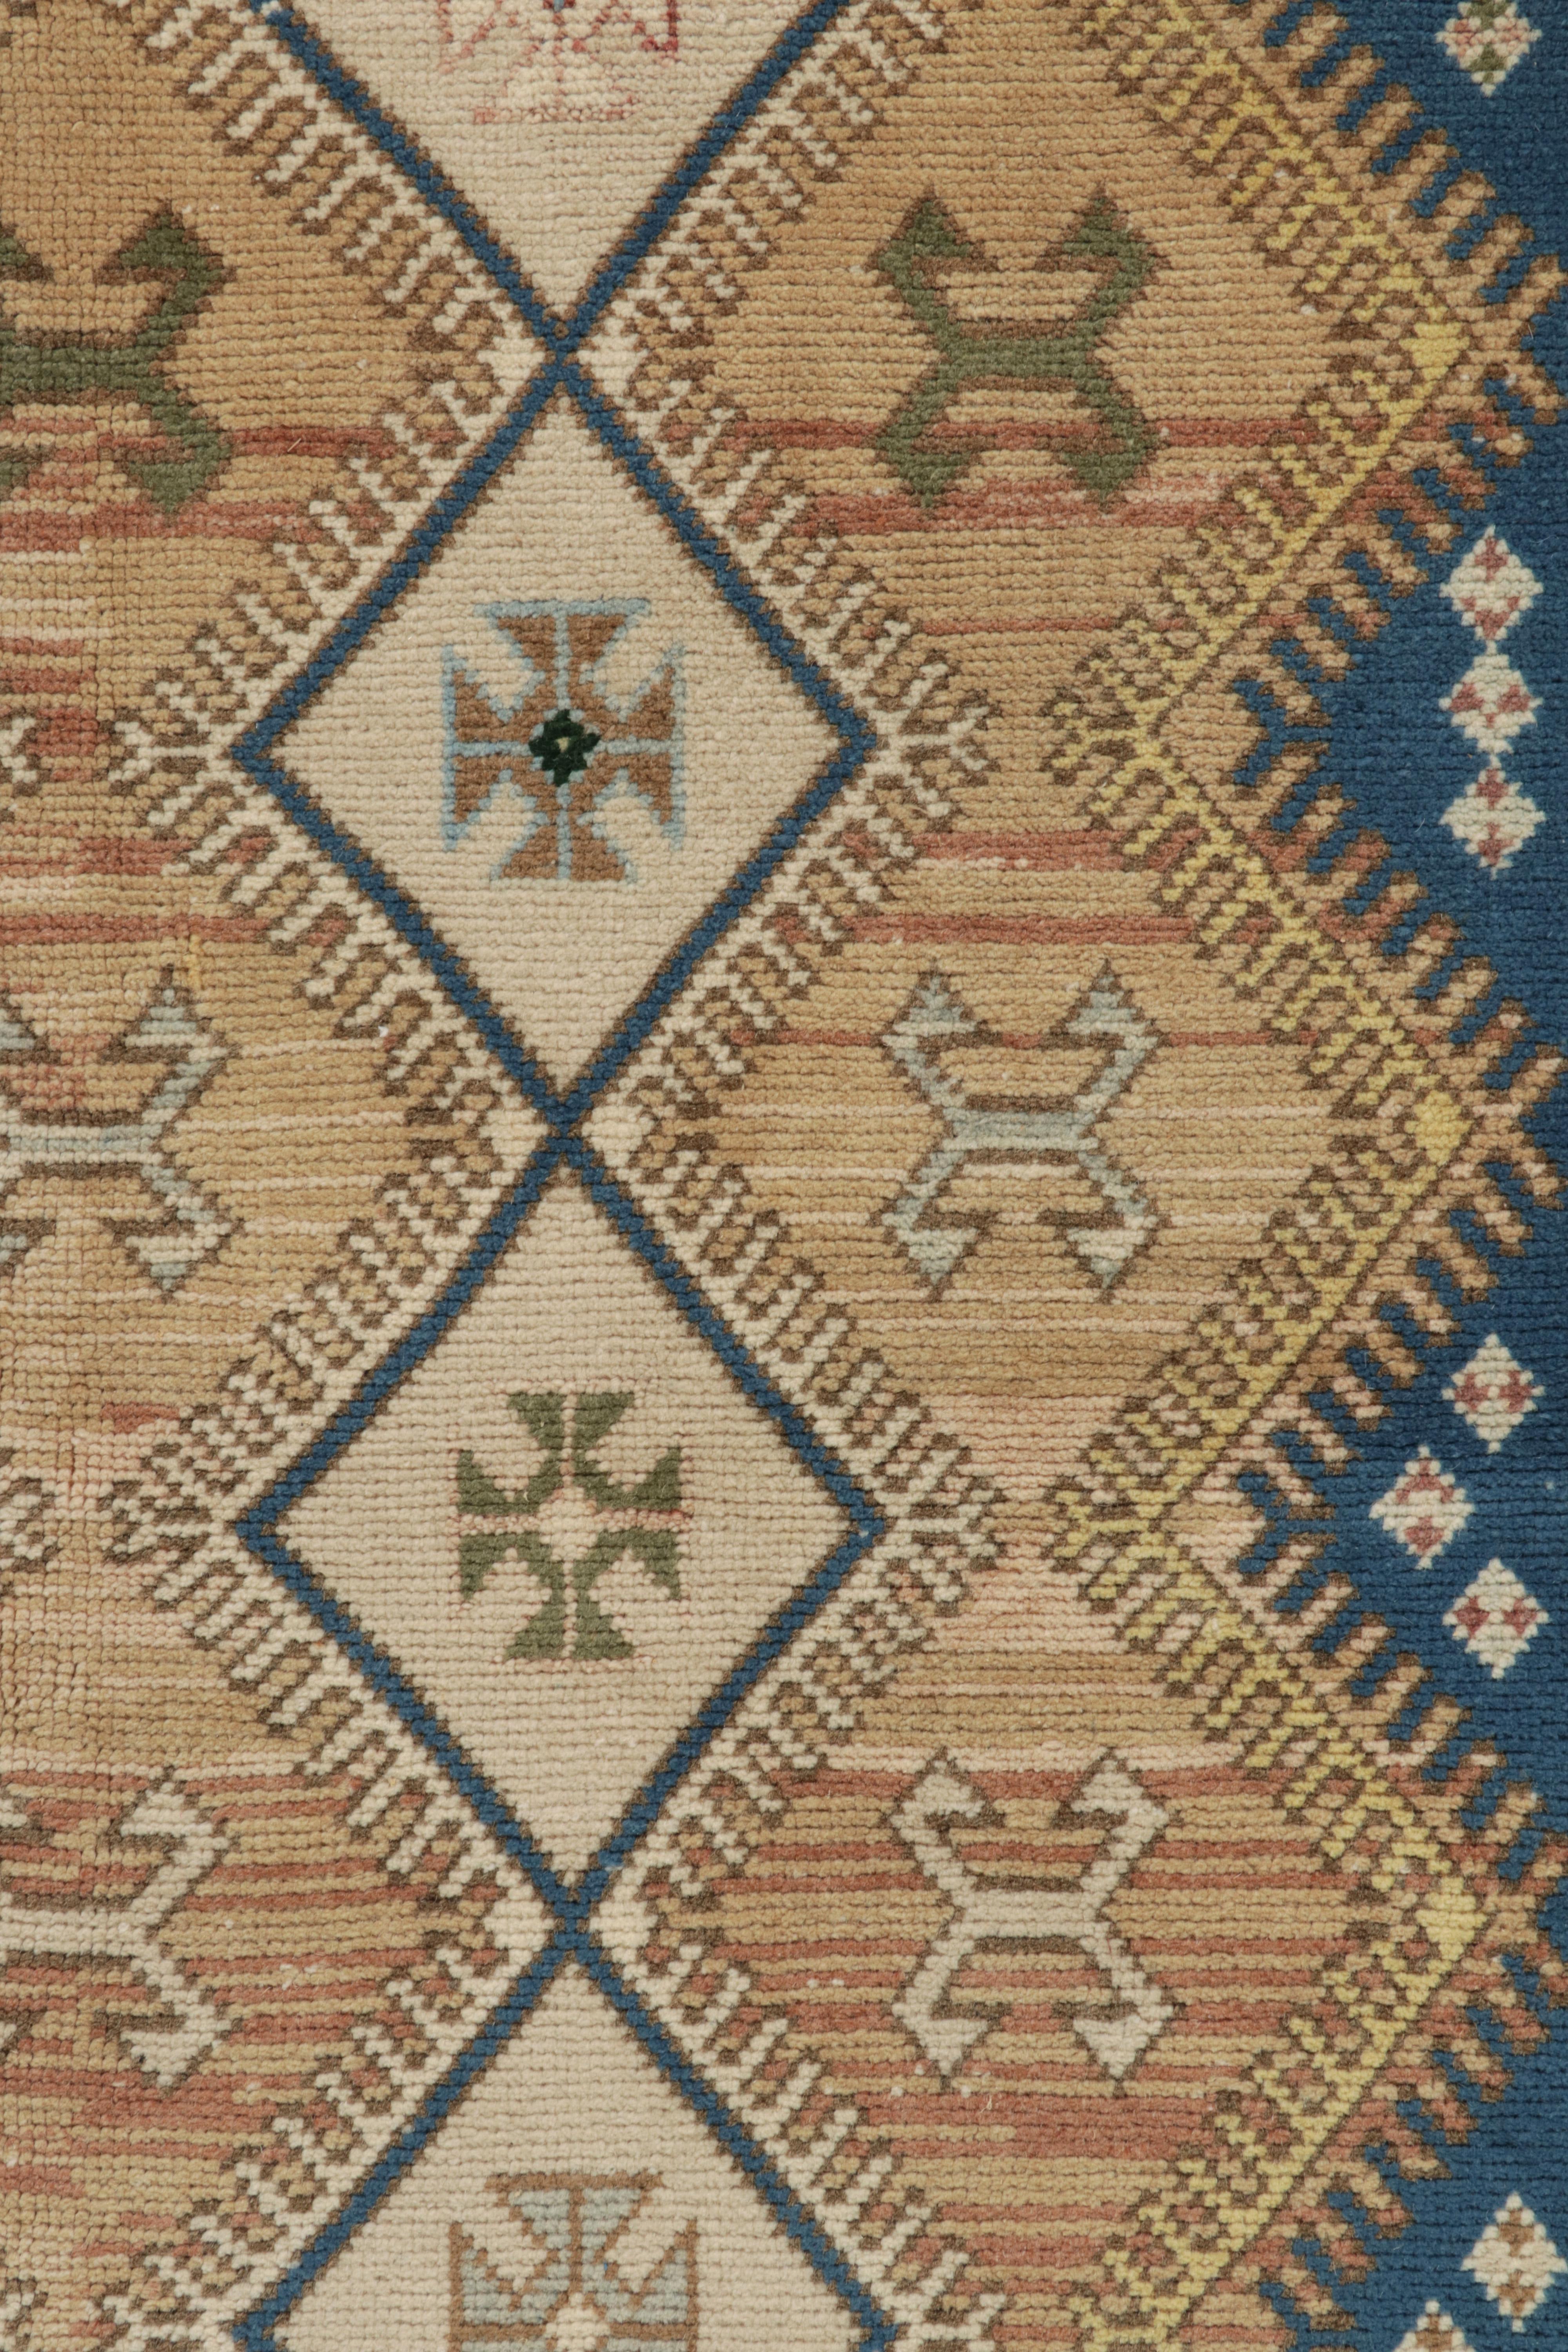 Wool 1950s, Vintage Turkish Tribal Rug Blue & Beige Geometric Pattern by Rug & Kilim For Sale